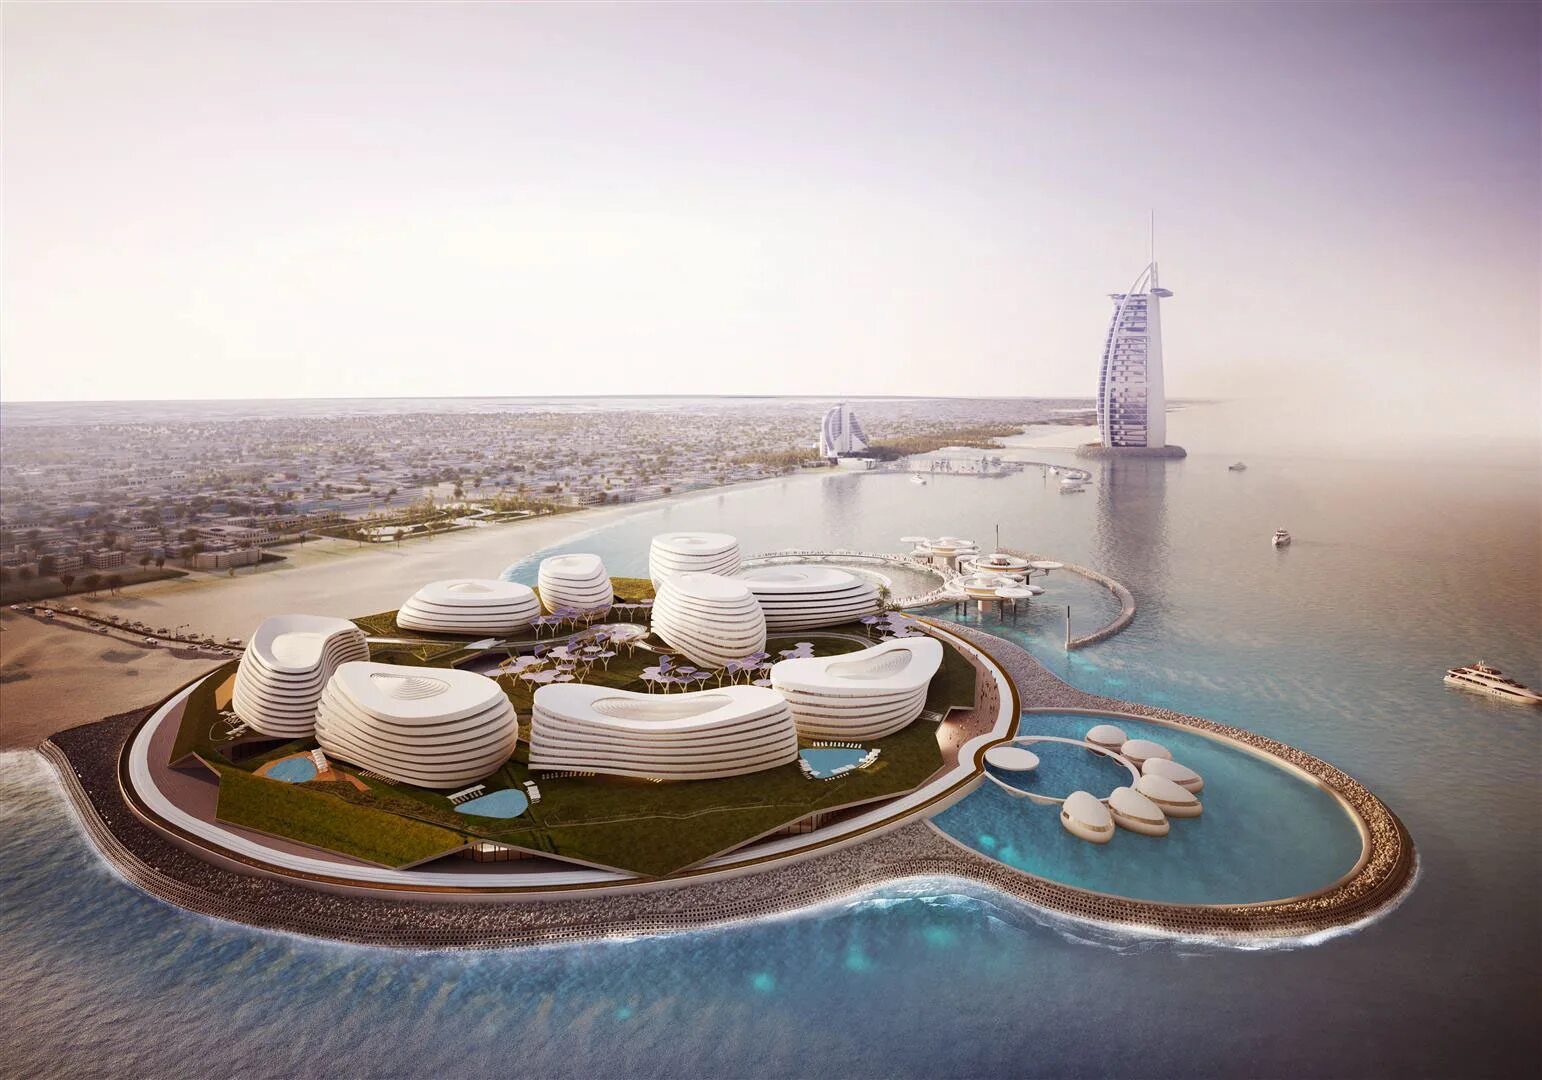 Дубай концепт. Дубаи архитектура Экспо. Атлантис Роял Дубай. Архитектура Экспо в Дубае 2022.